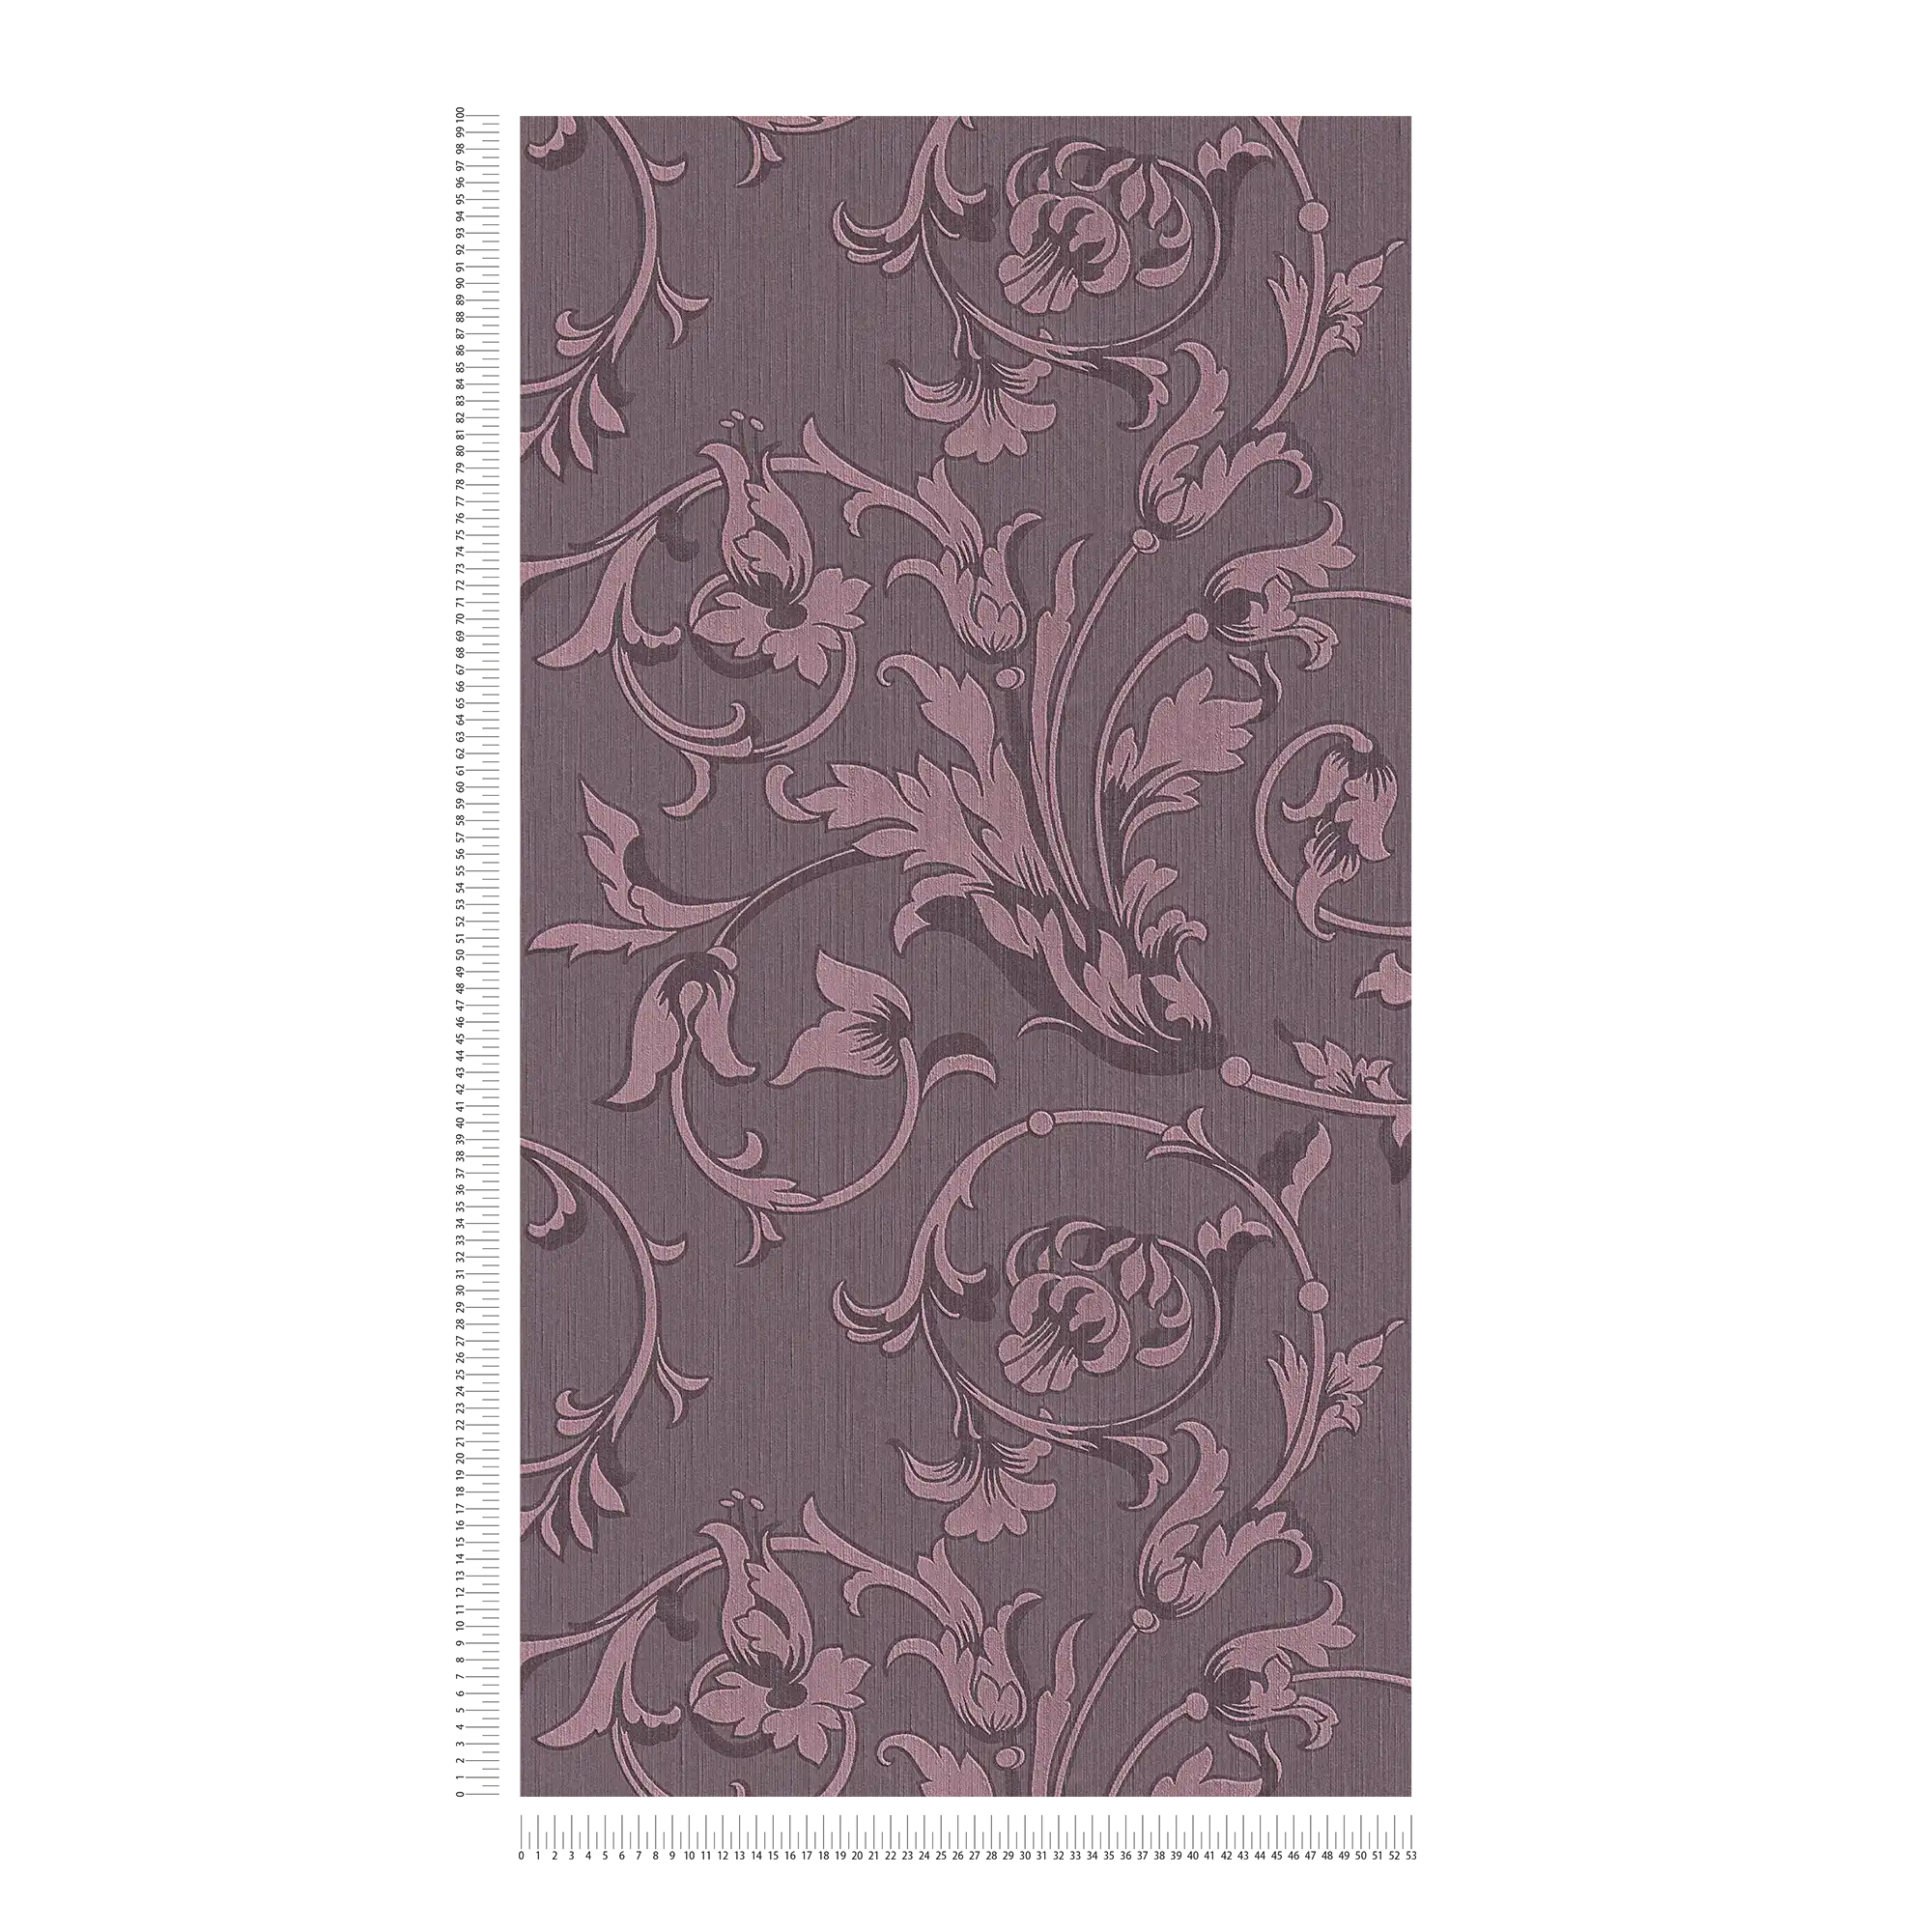             Carta da parati ornamentale con ottica tessile in seta - viola
        